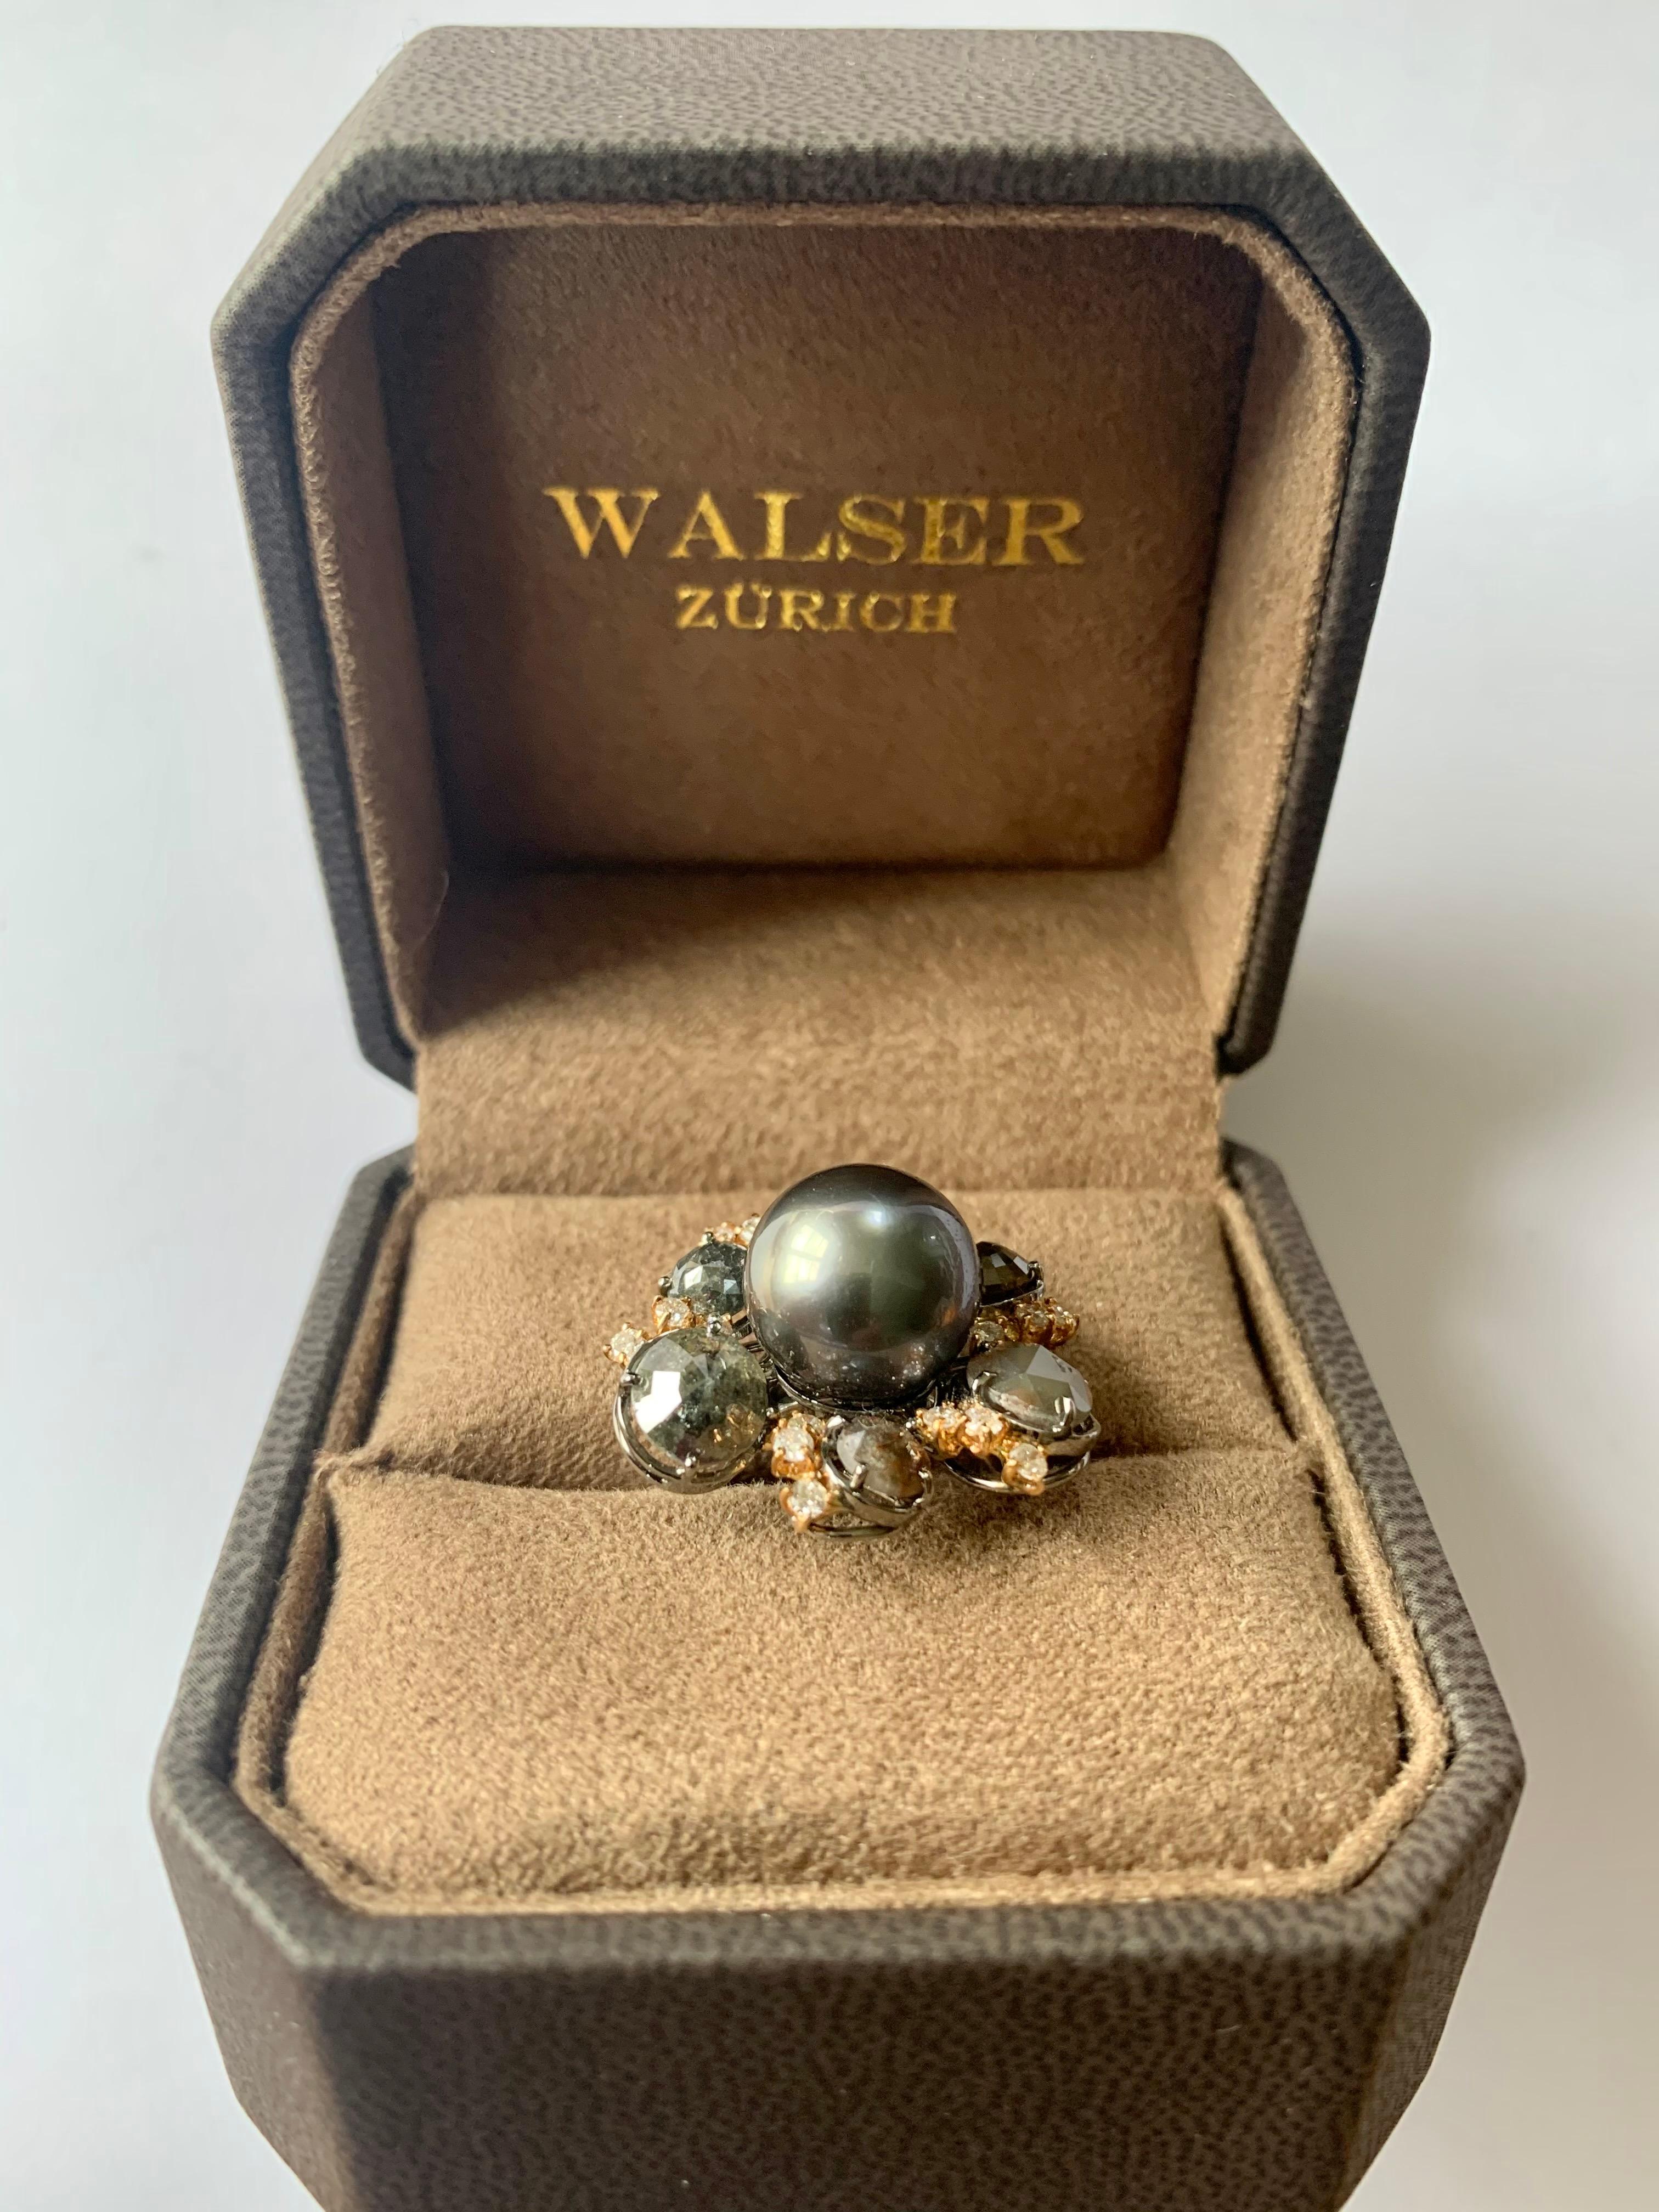 Très inhabituelle bague en or blanc noirci et or rose 18 carats avec 1 perle de Tahiti argentée (12,2 mm). La perle de culture est mise en valeur par 6 diamants bruts d'un poids de 5,45 ct et 18 diamants taille brillant d'un poids de 0,50 ct. 
La